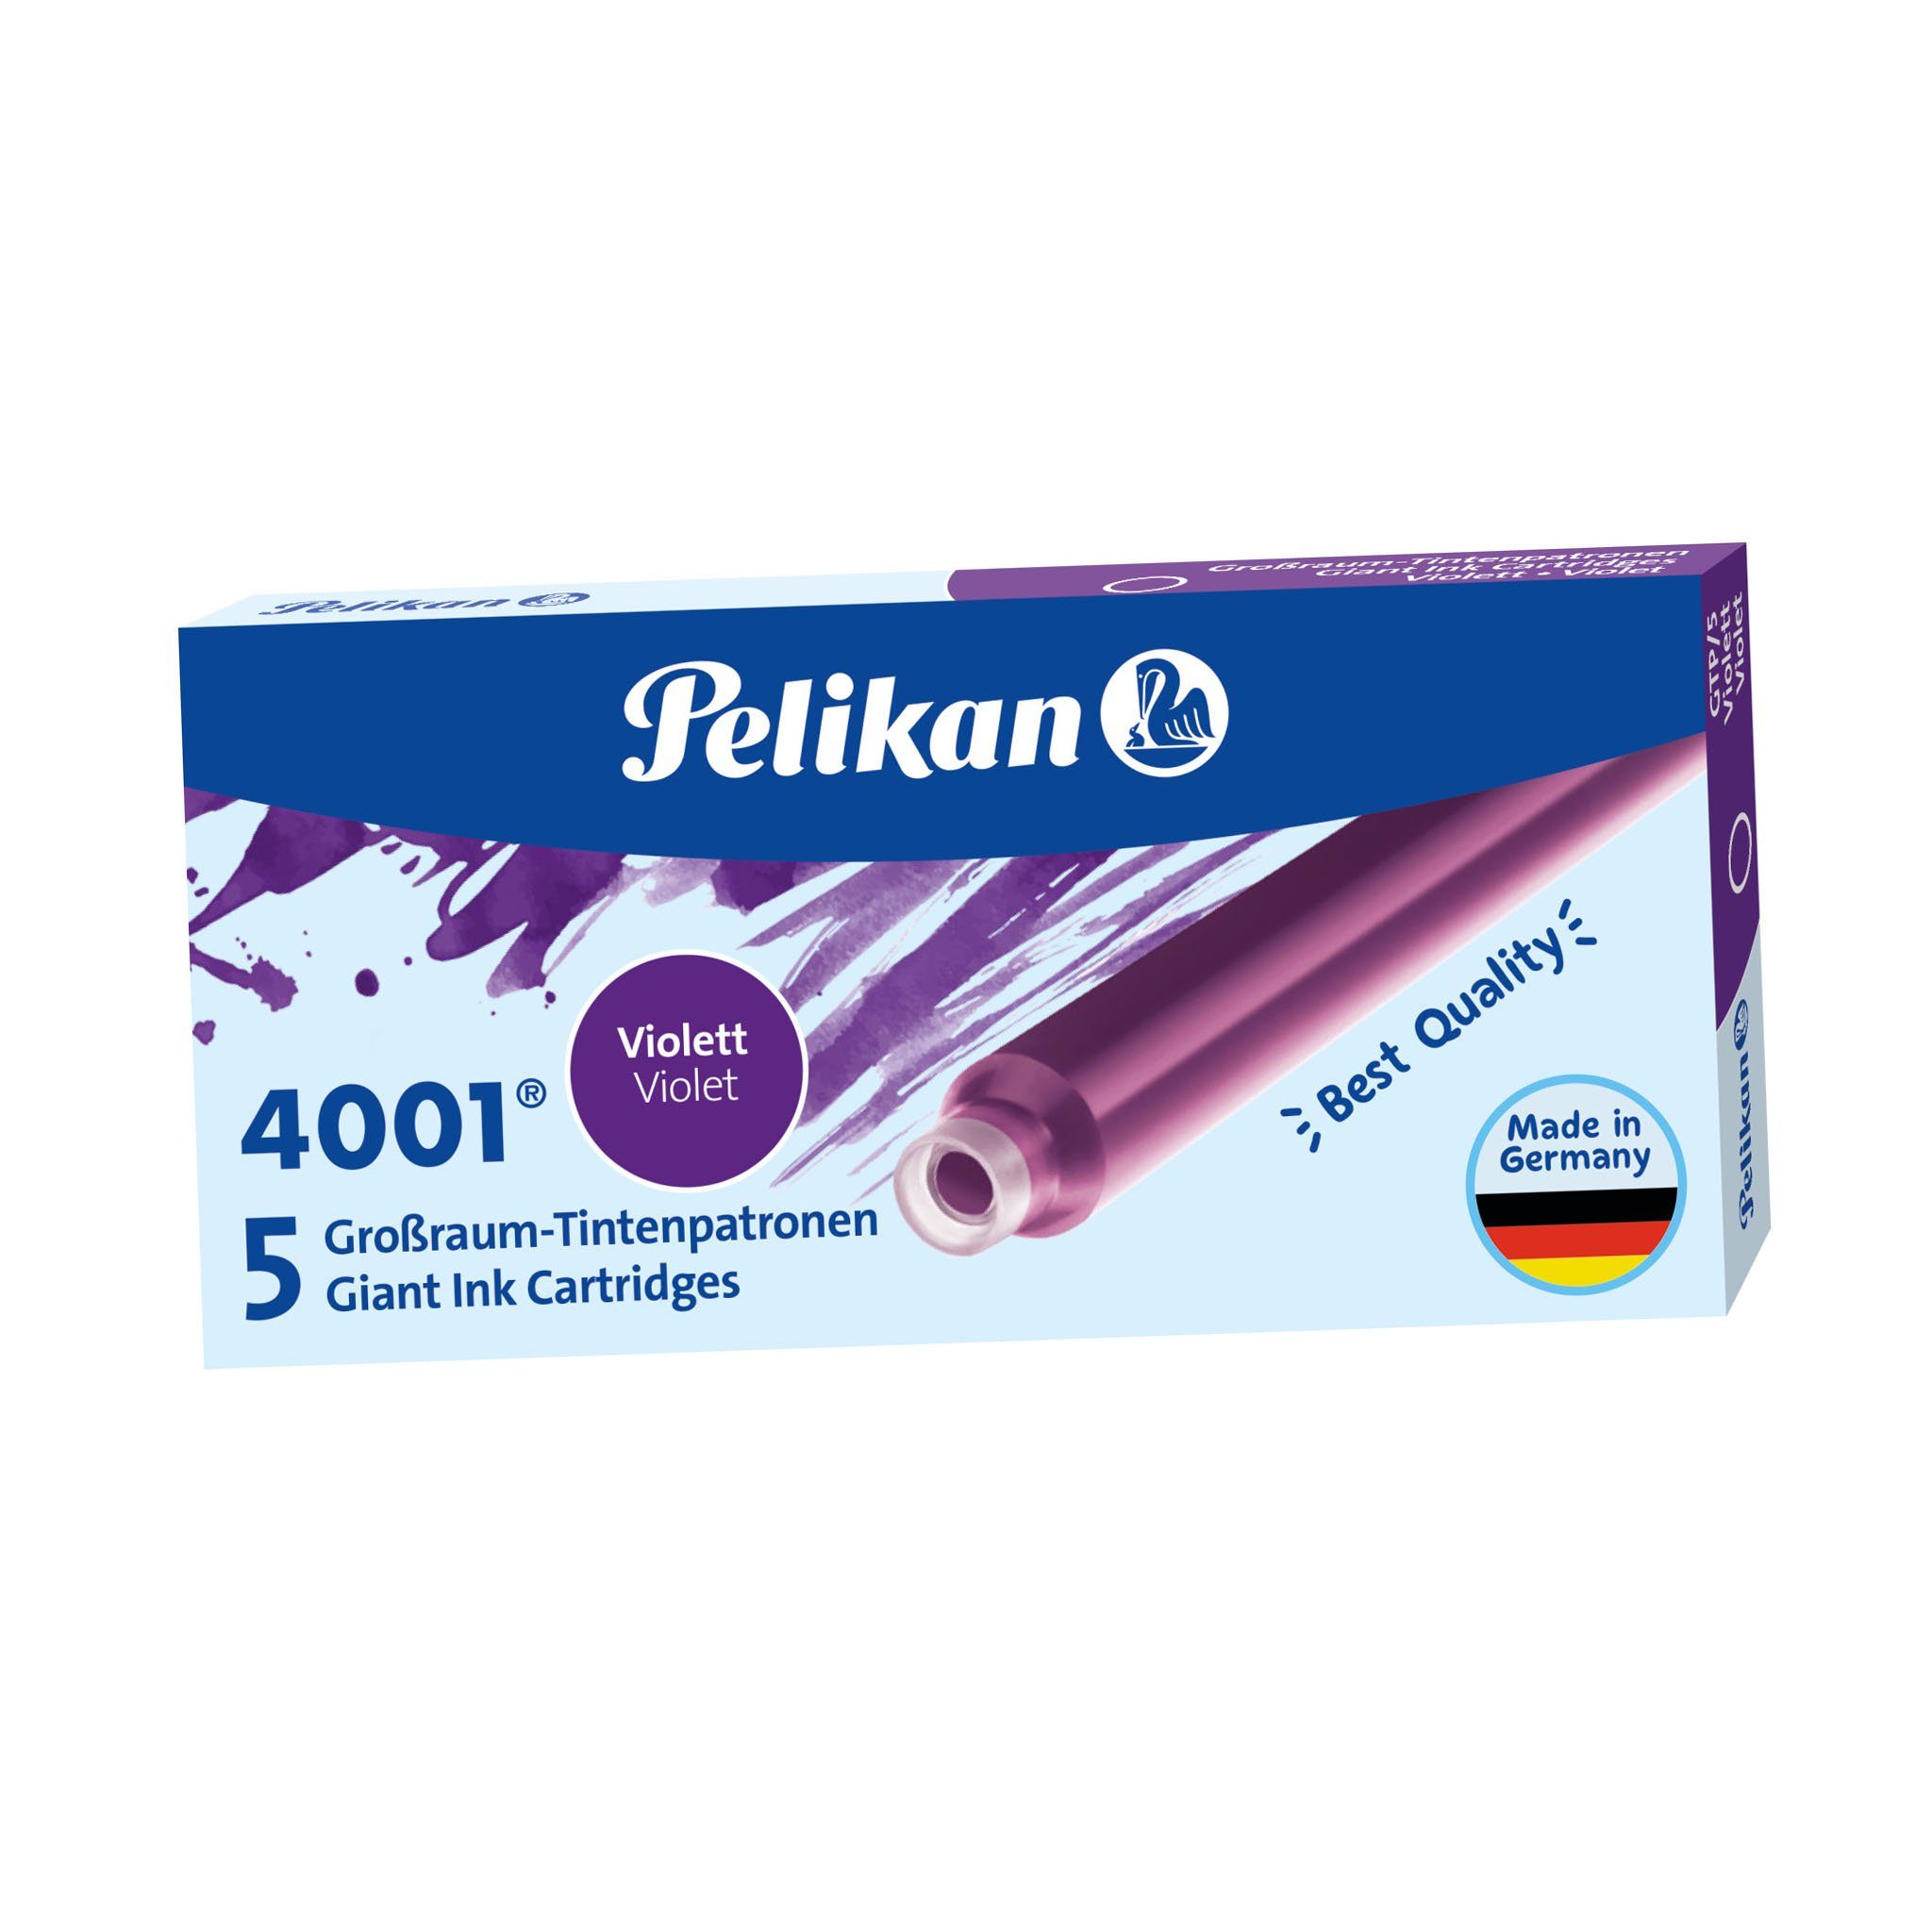 Pelikan Füllfederhalter Pelikan Großraum-Tintenpatronen 4001 GTP/5, violett